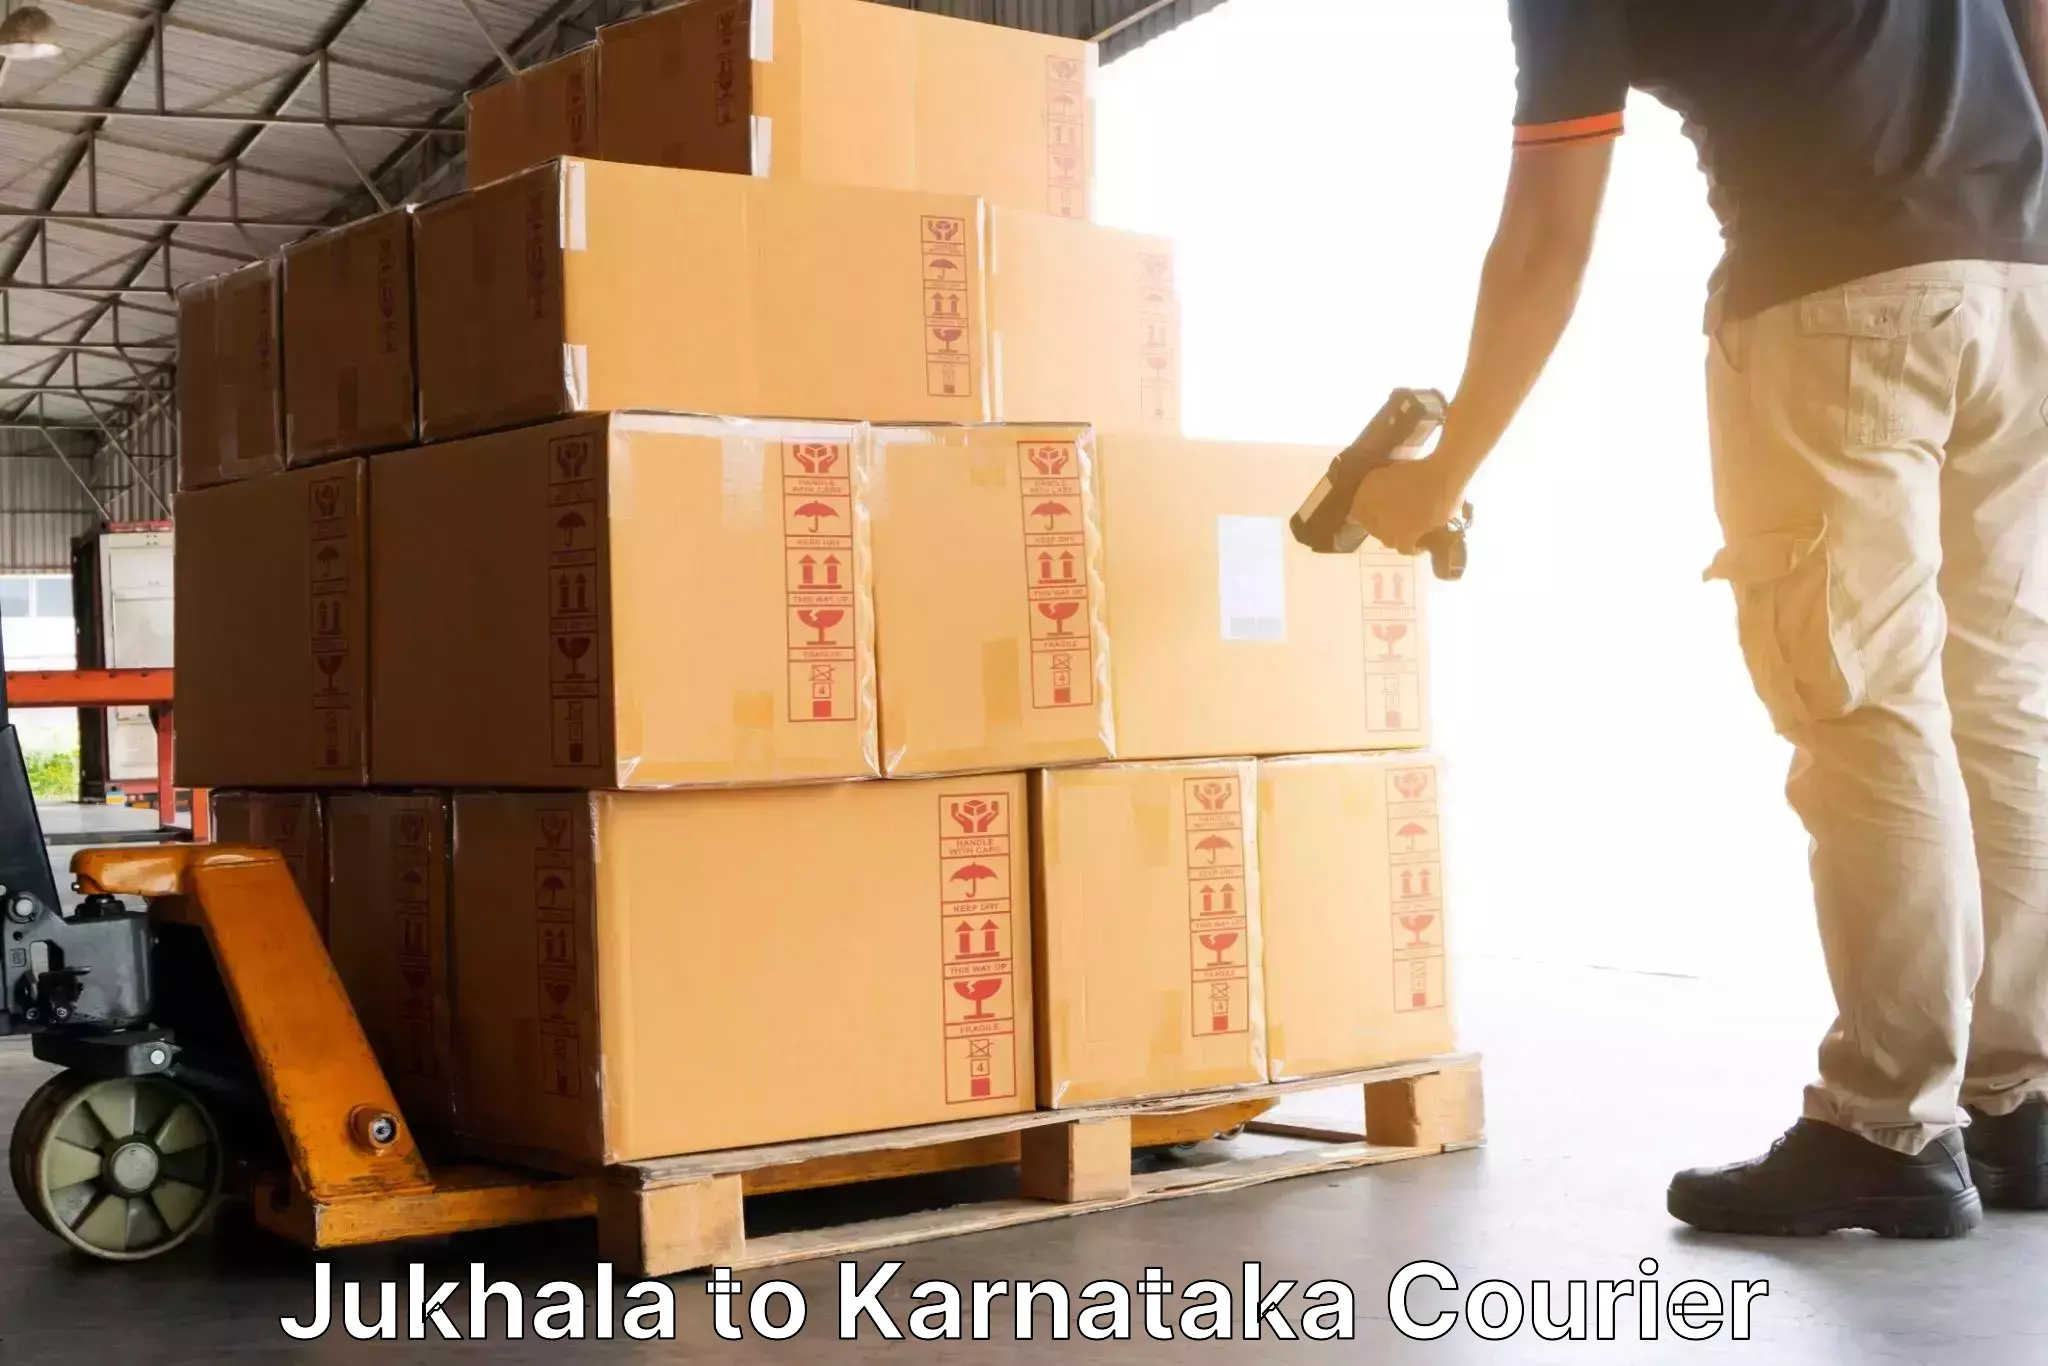 On-demand shipping options Jukhala to Nanjangud